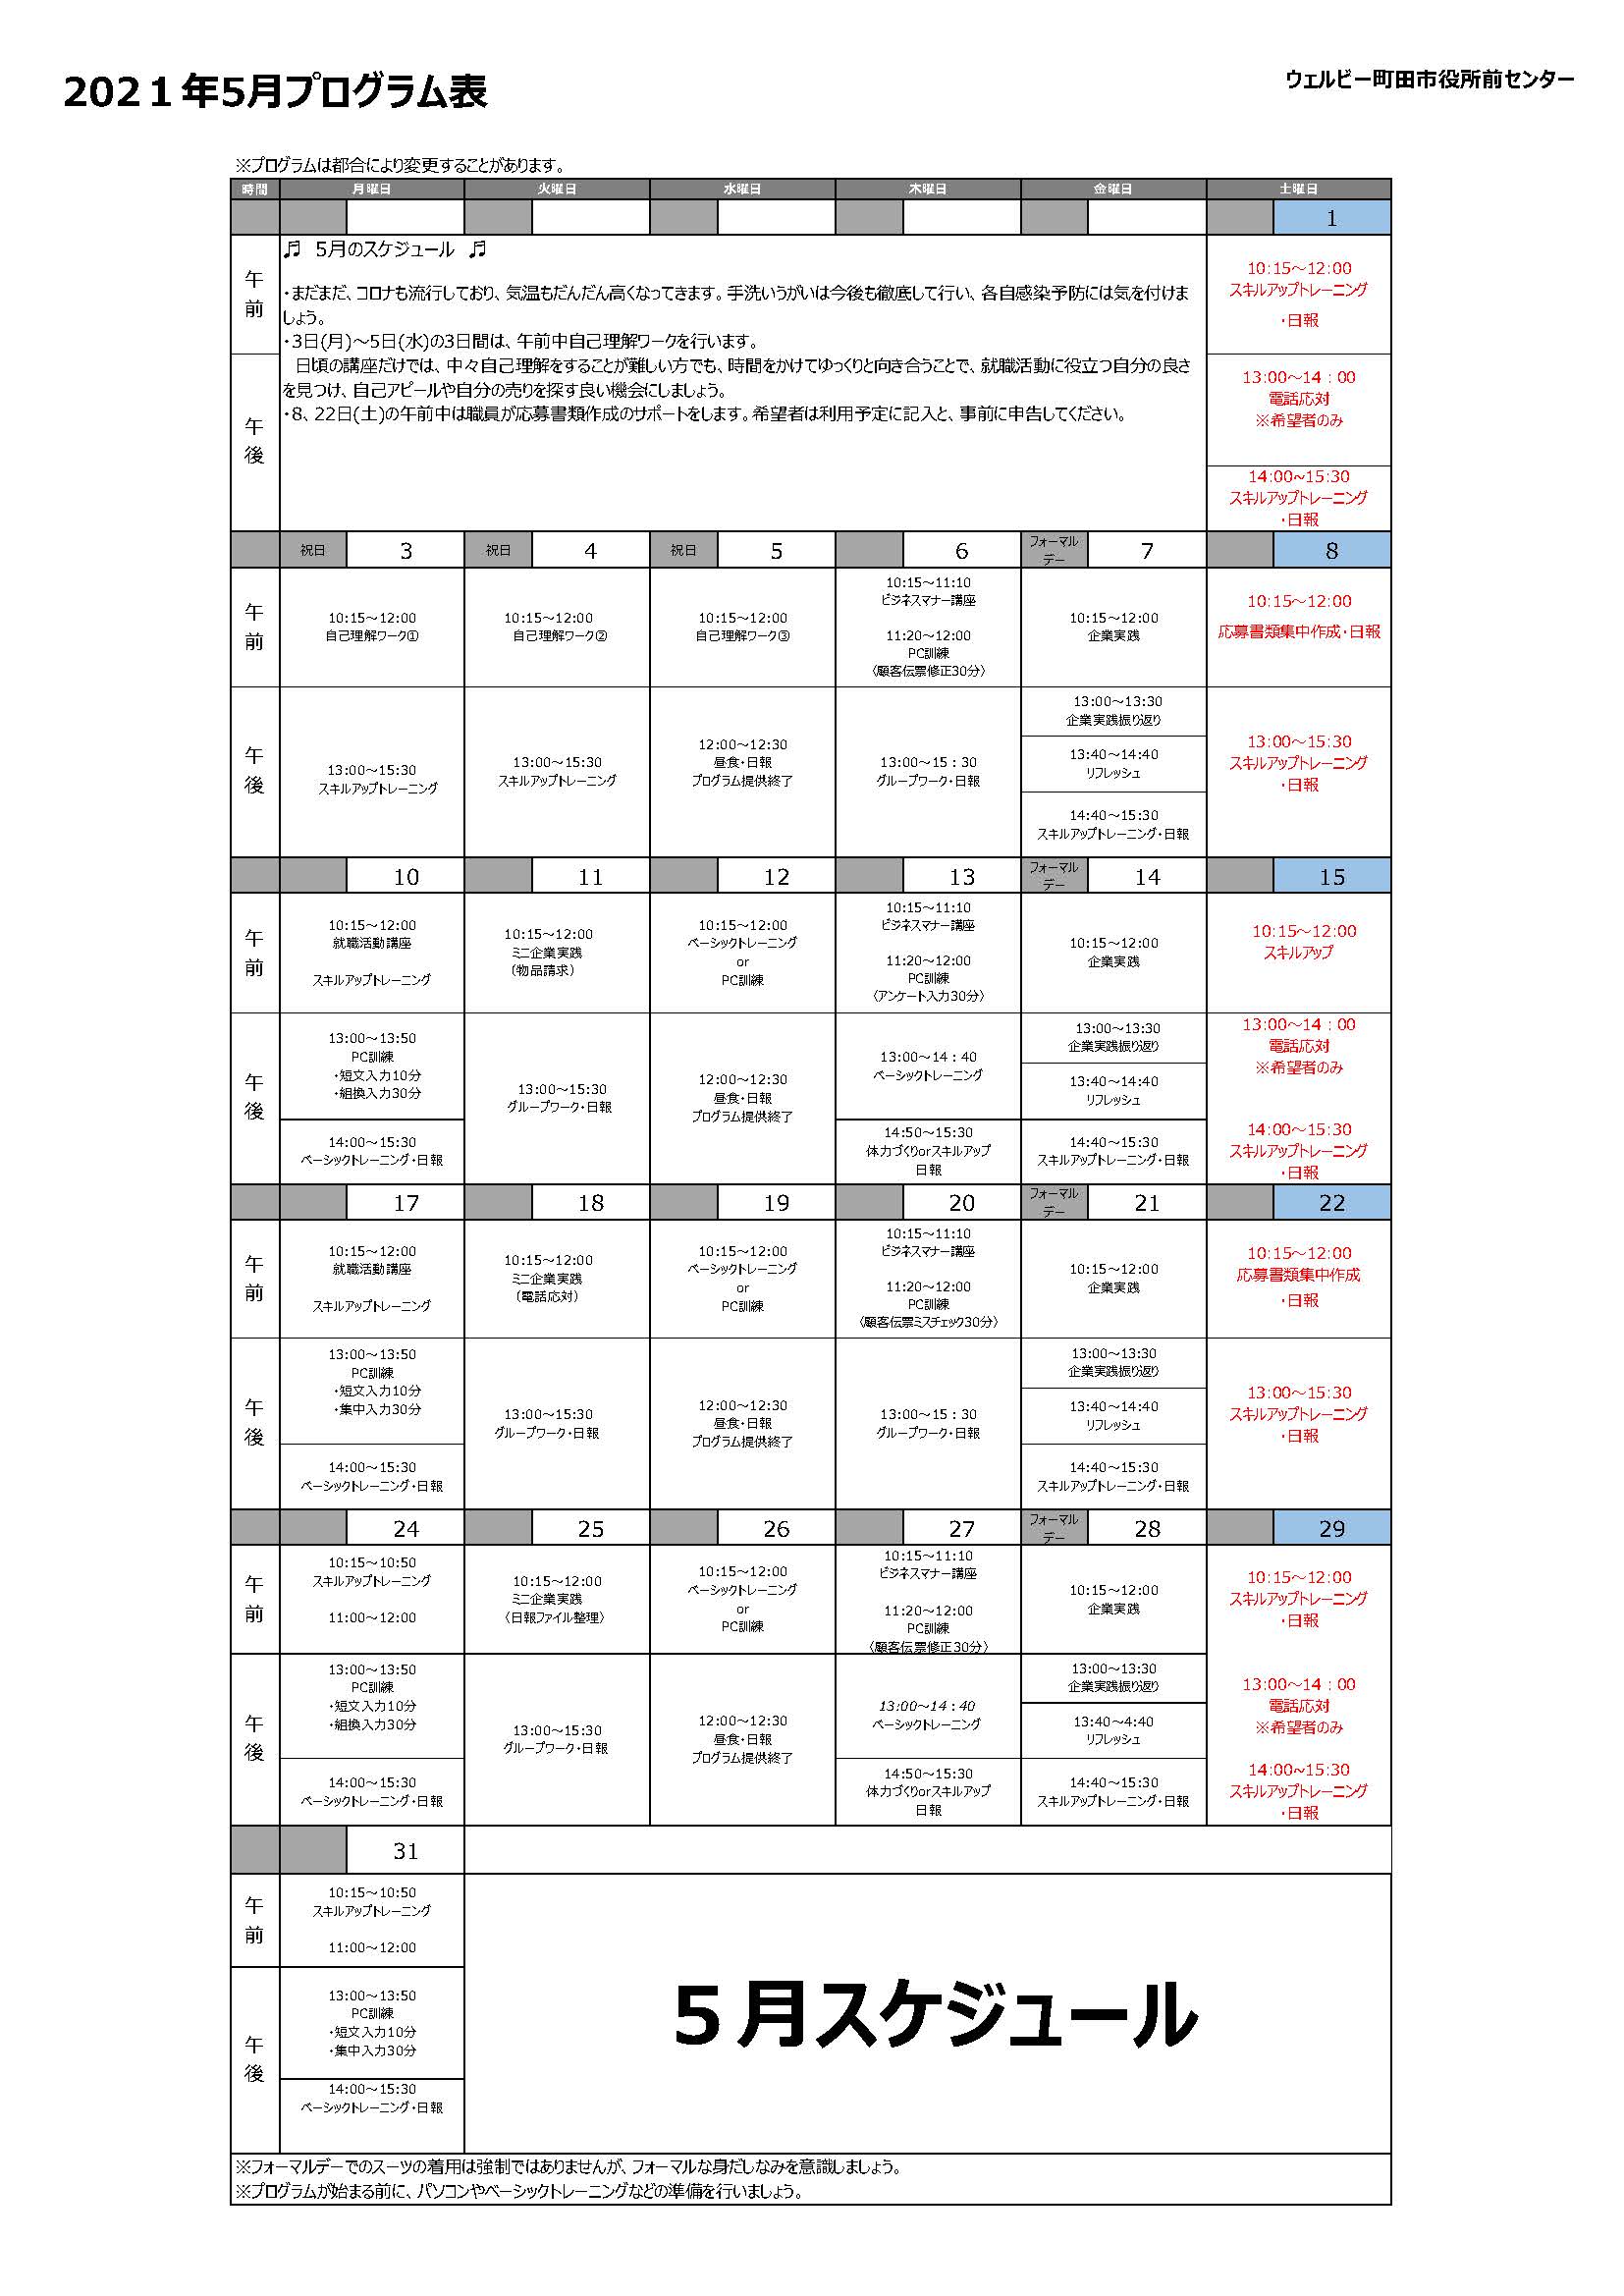 町田市役所前センター5月+プログラム表